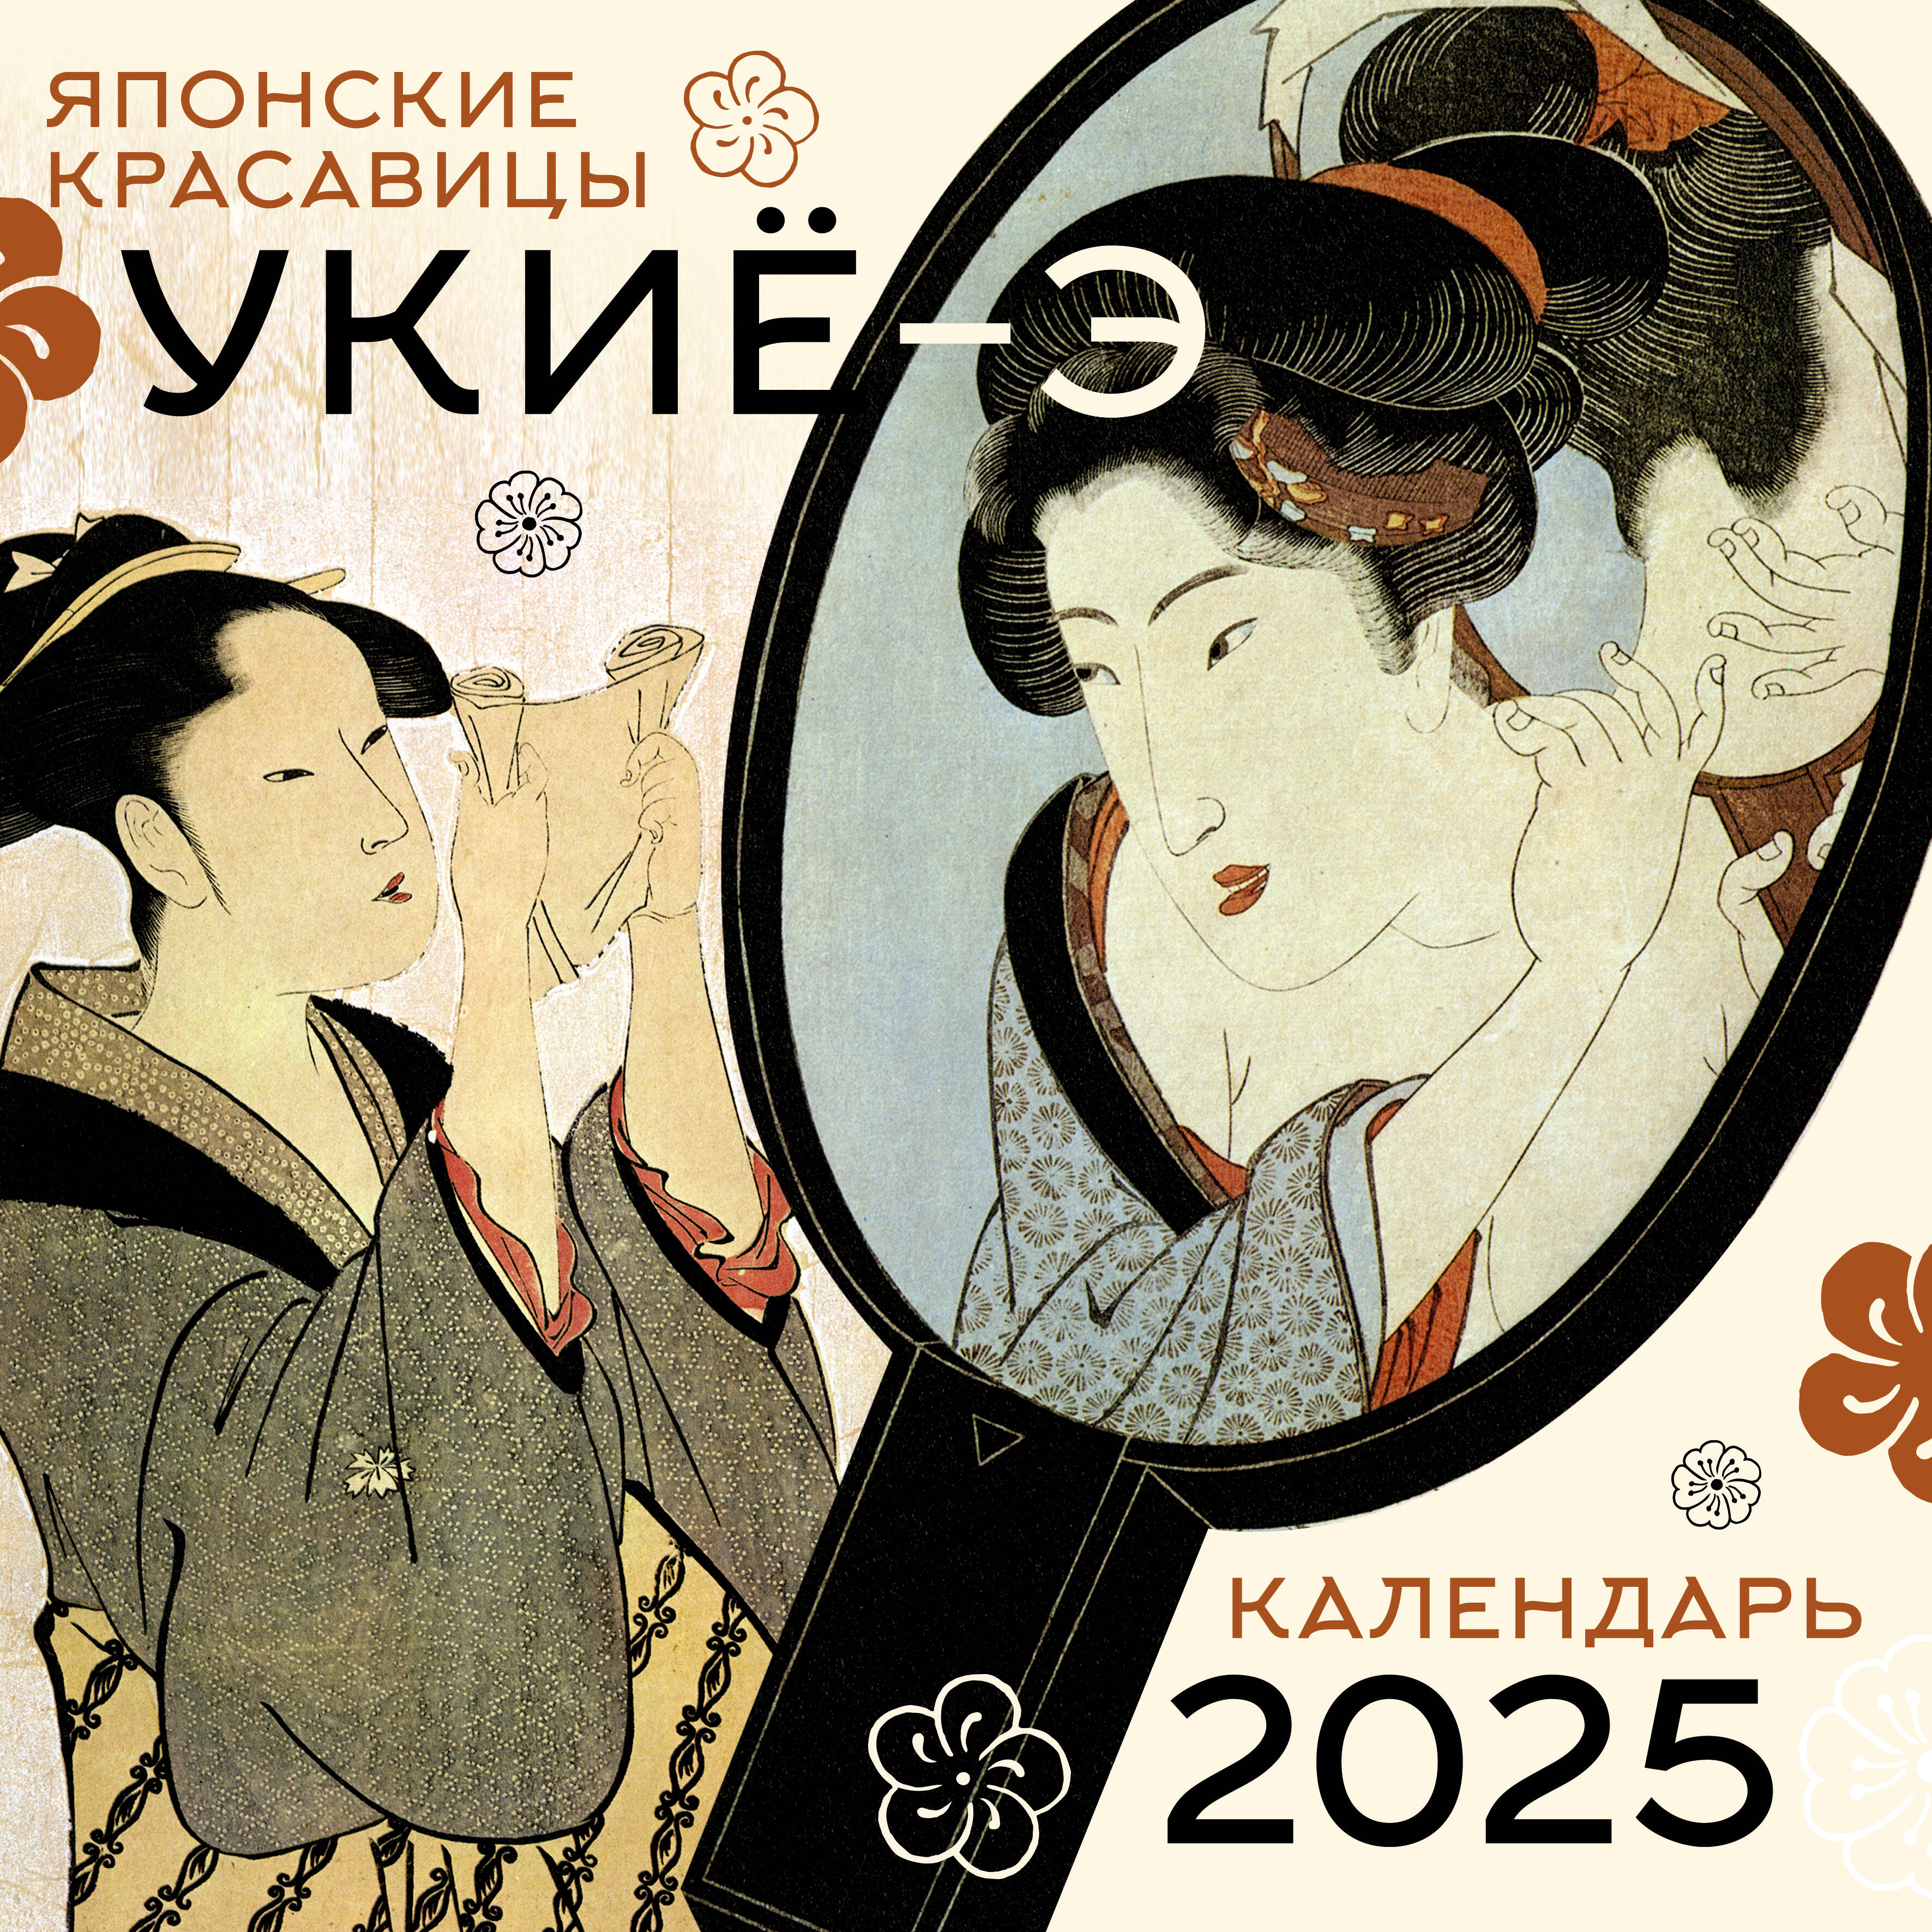  Японские красавицы укиё-э. Календарь на 2025 год - страница 0